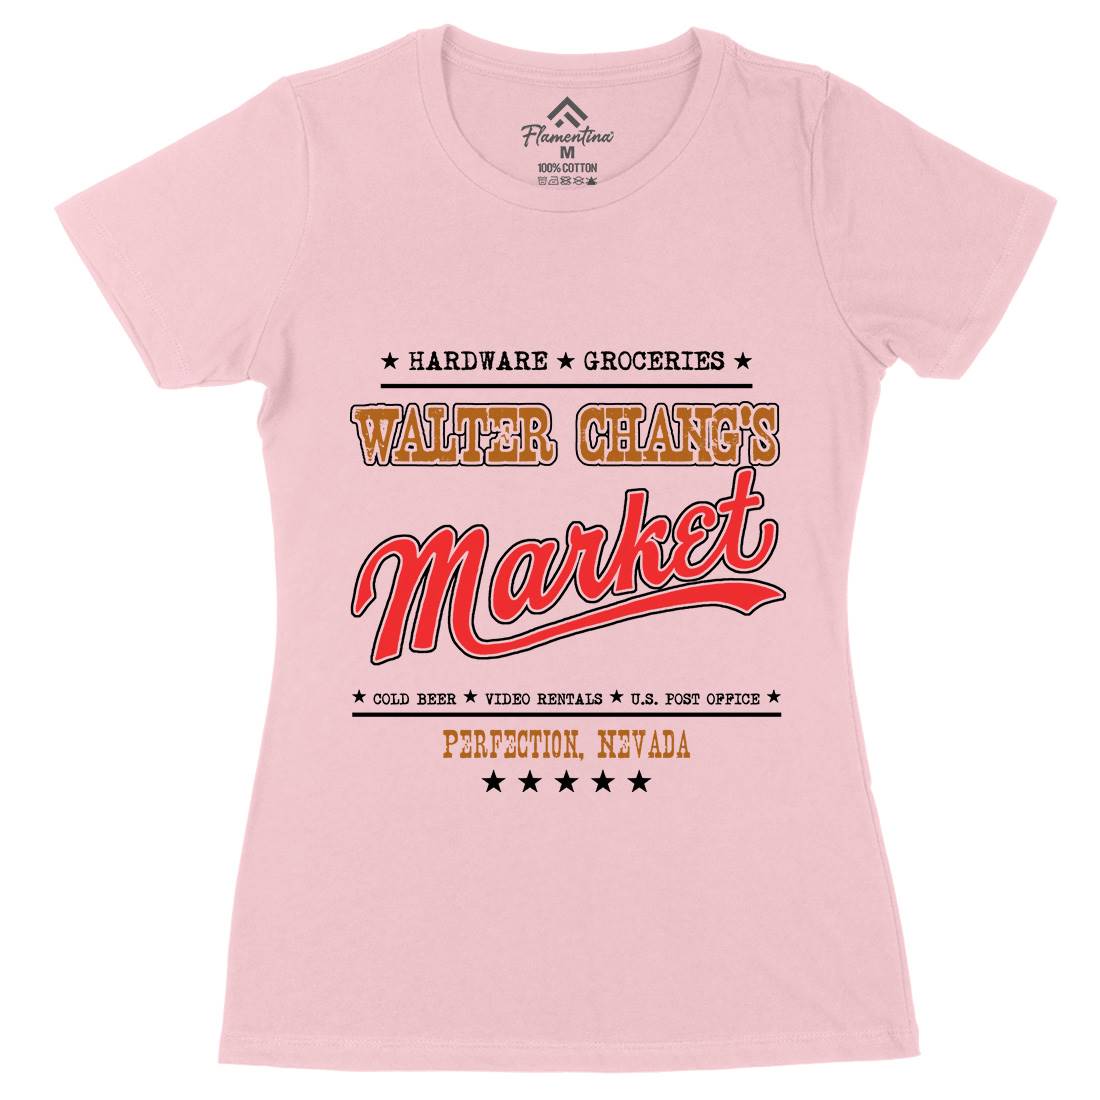 Walter Changs Market Womens Organic Crew Neck T-Shirt Horror D106